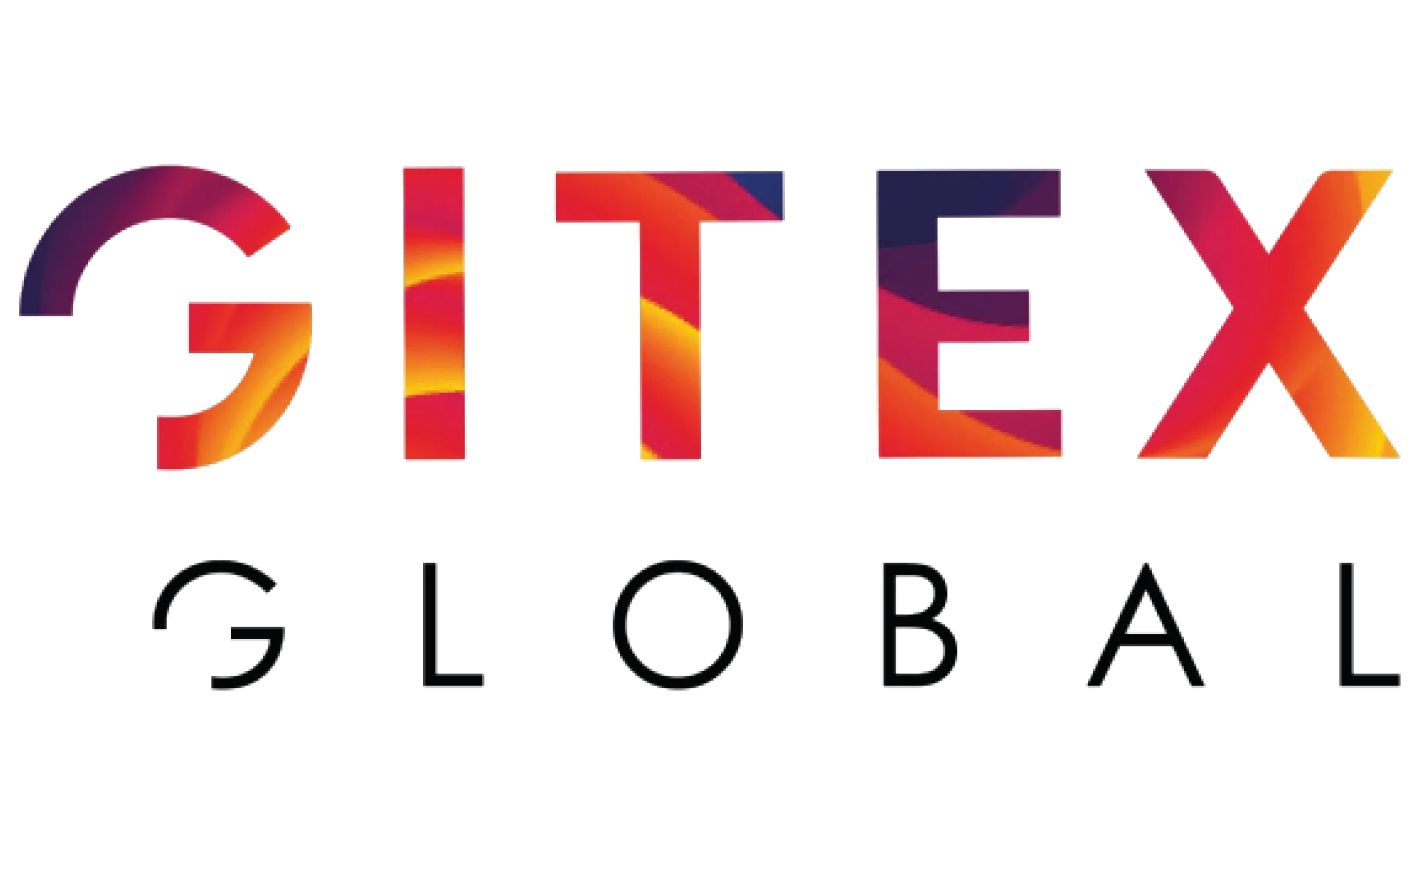 GITEX Global 2022